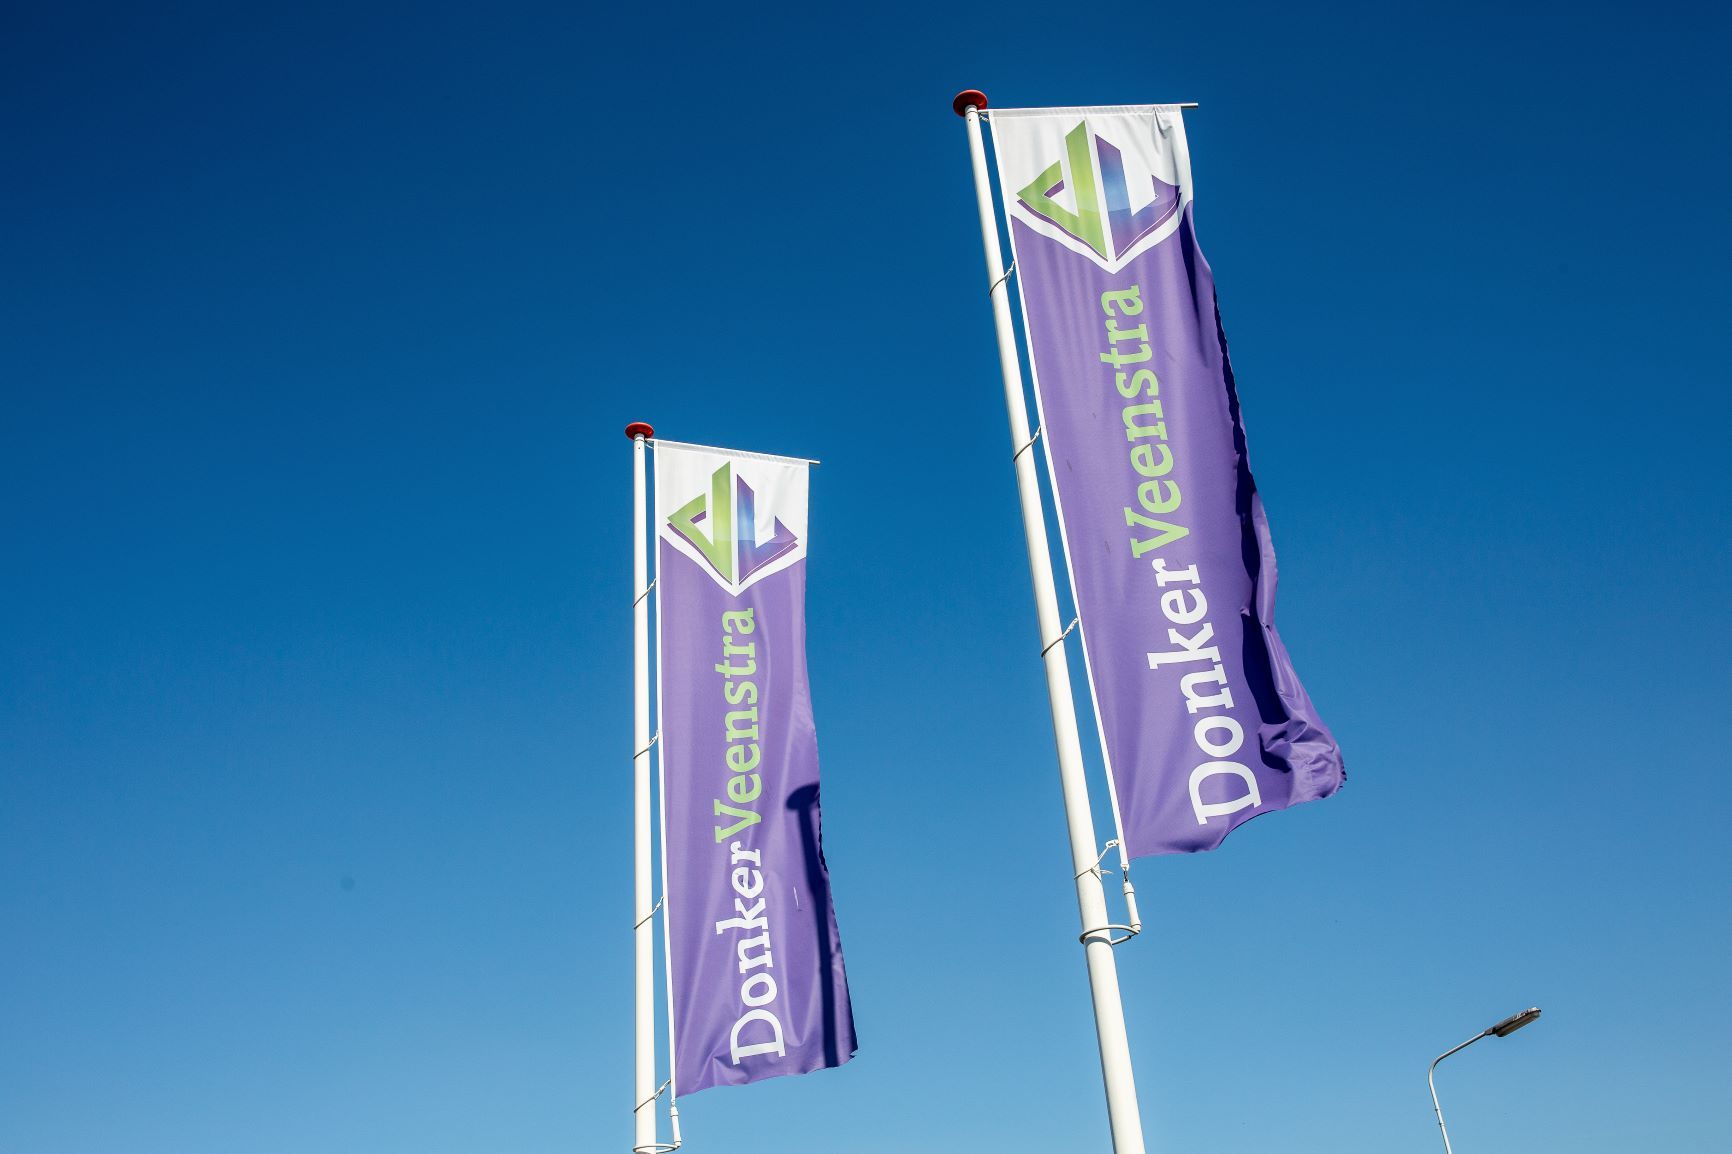 Twee paarse vlaggen met het bedrijf DonkerVeenstra erop. Bovenaan het groen en blauwe logo van DonkerVeenstra. Blauwe lucht als achtergrond.